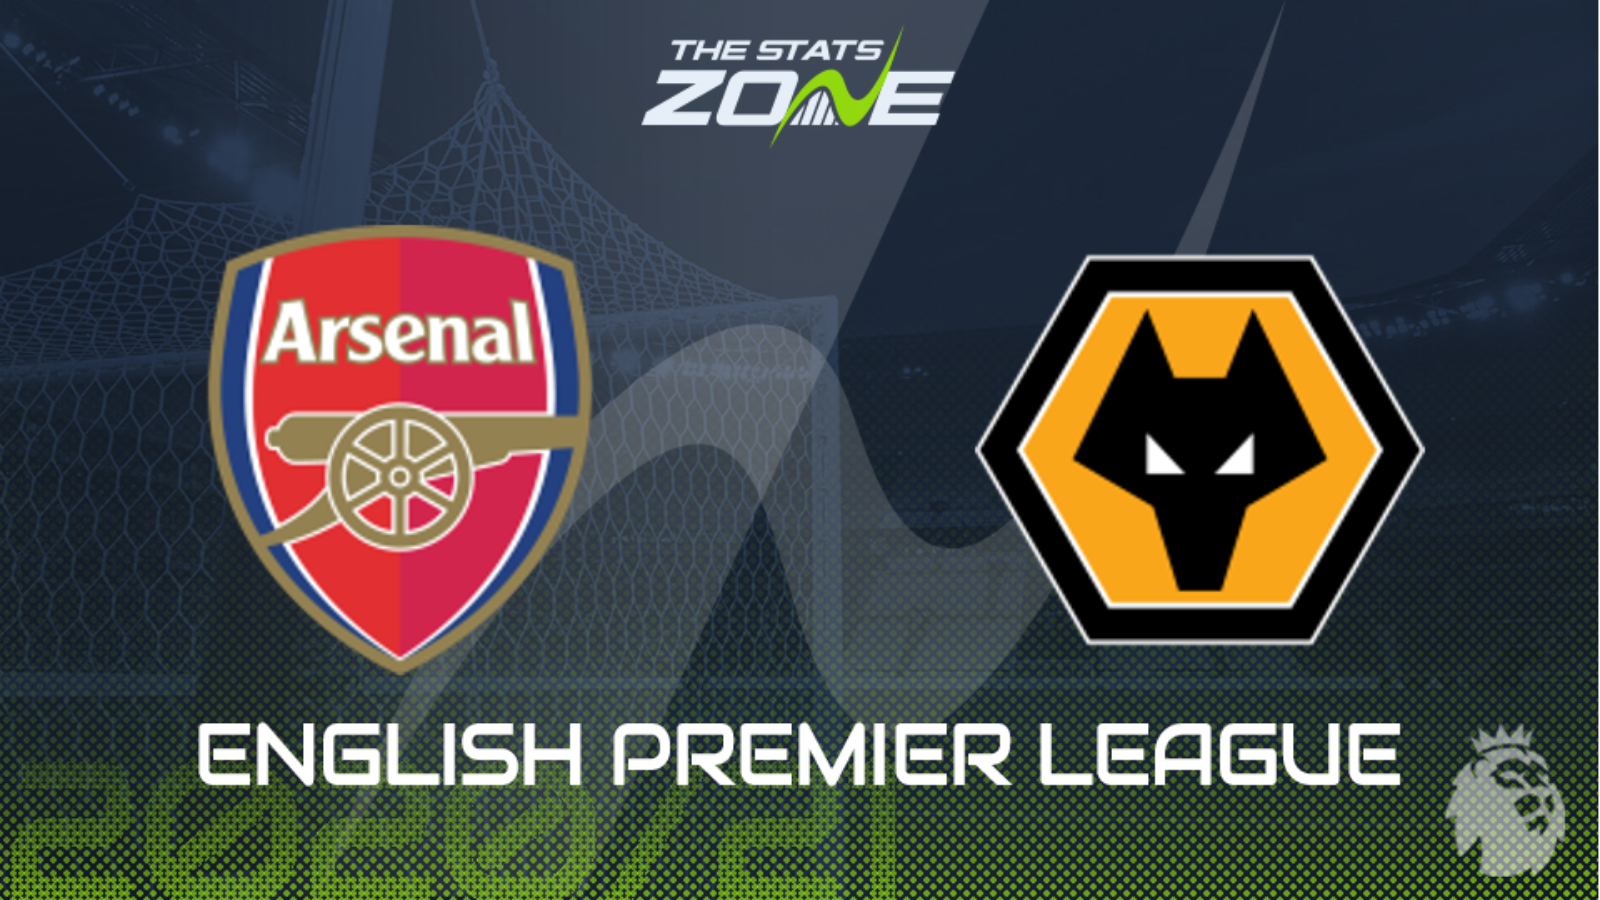 2020-21 Premier League – Arsenal vs Wolves Preview & Prediction - The